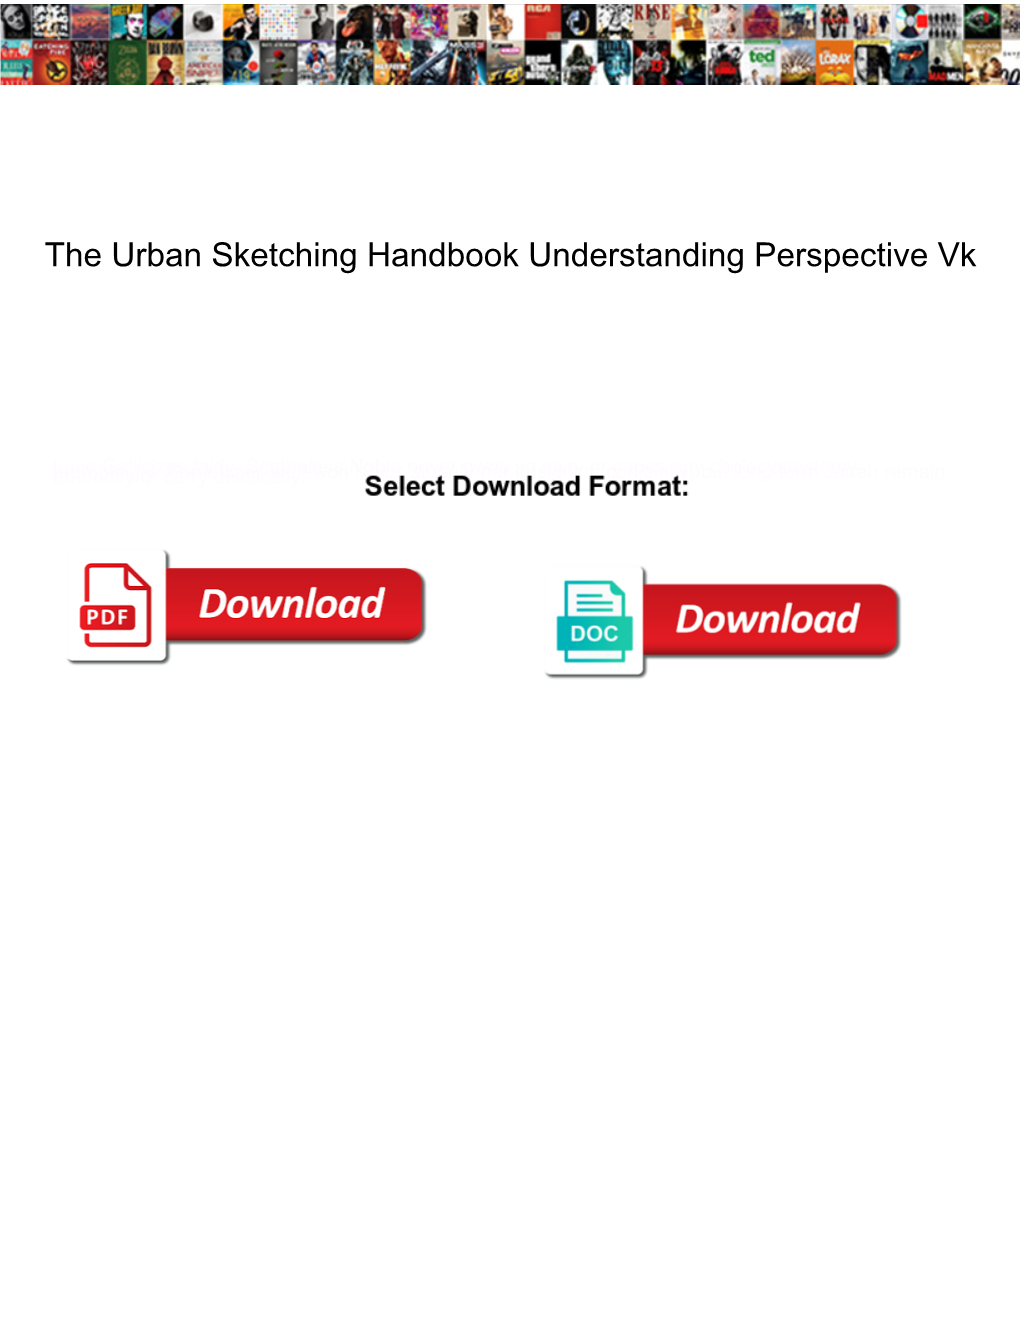 The Urban Sketching Handbook Understanding Perspective Vk